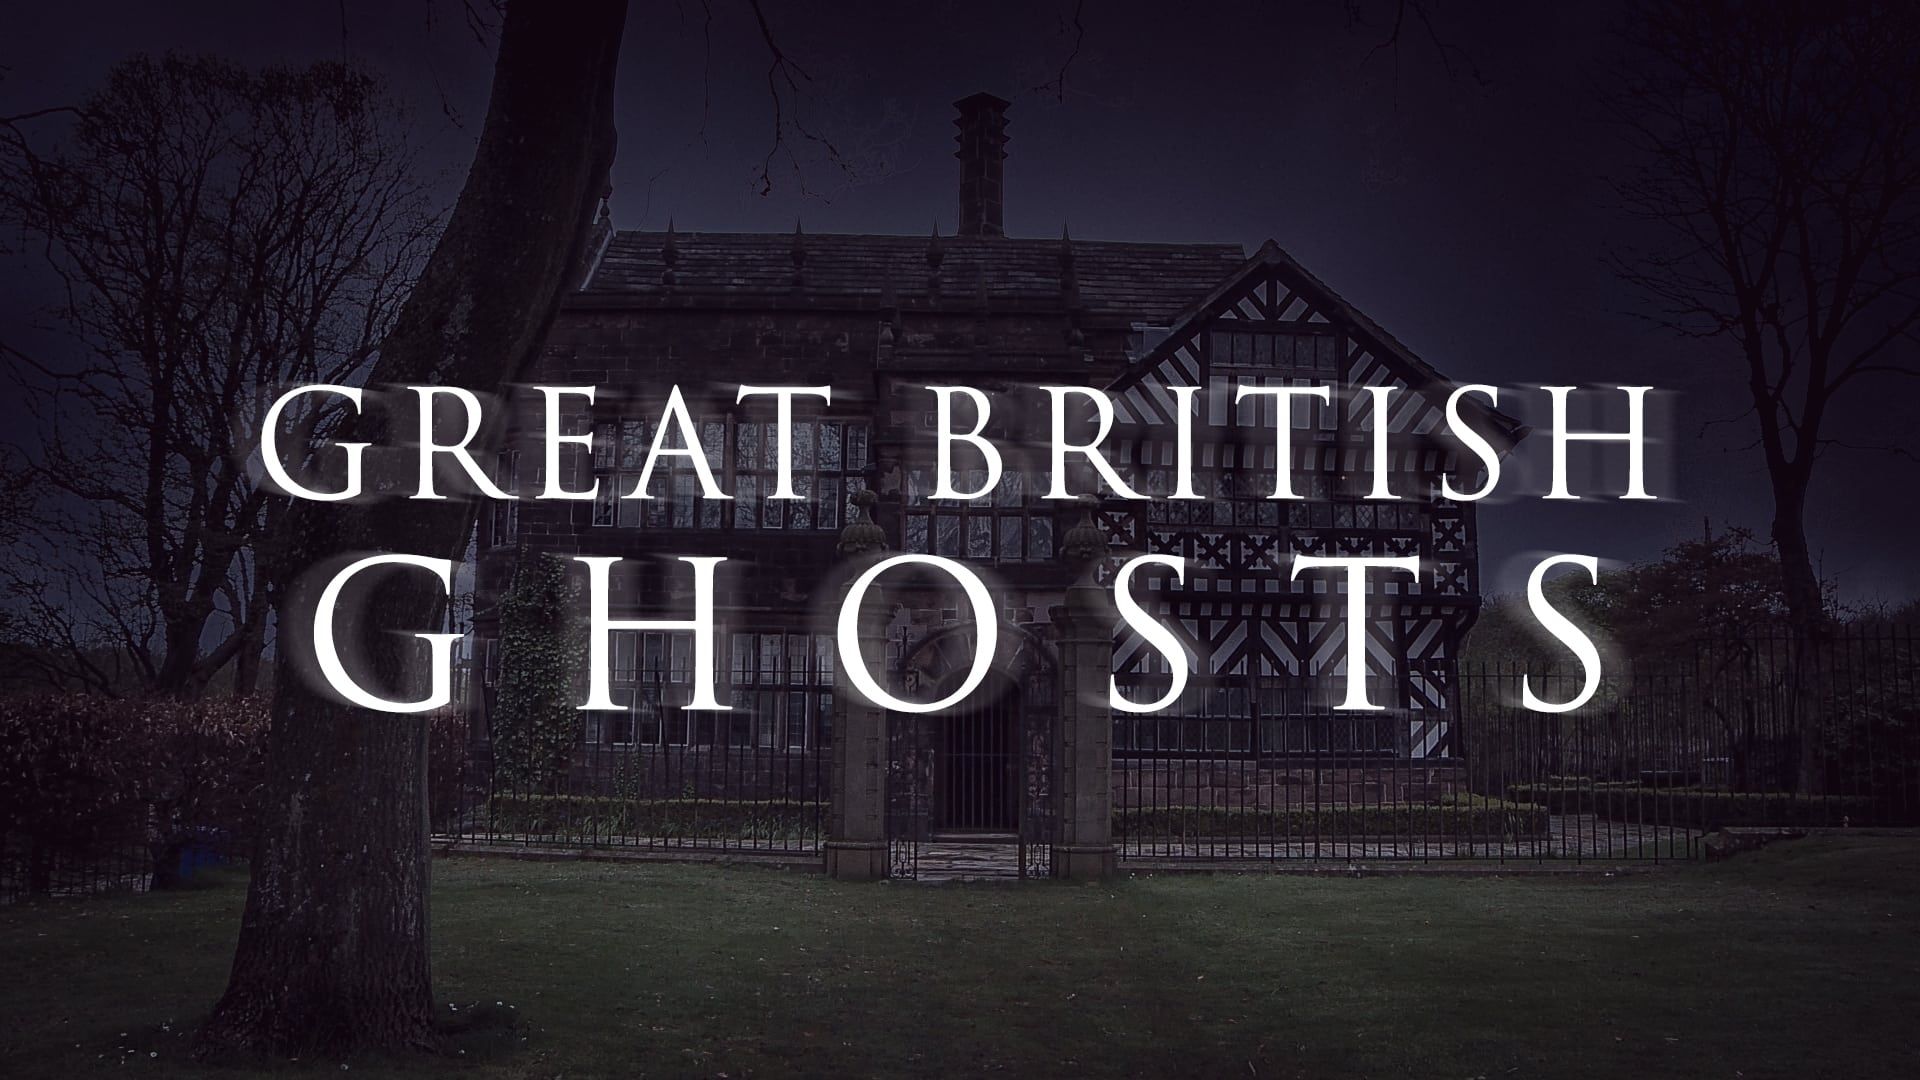 Great British Ghosts background